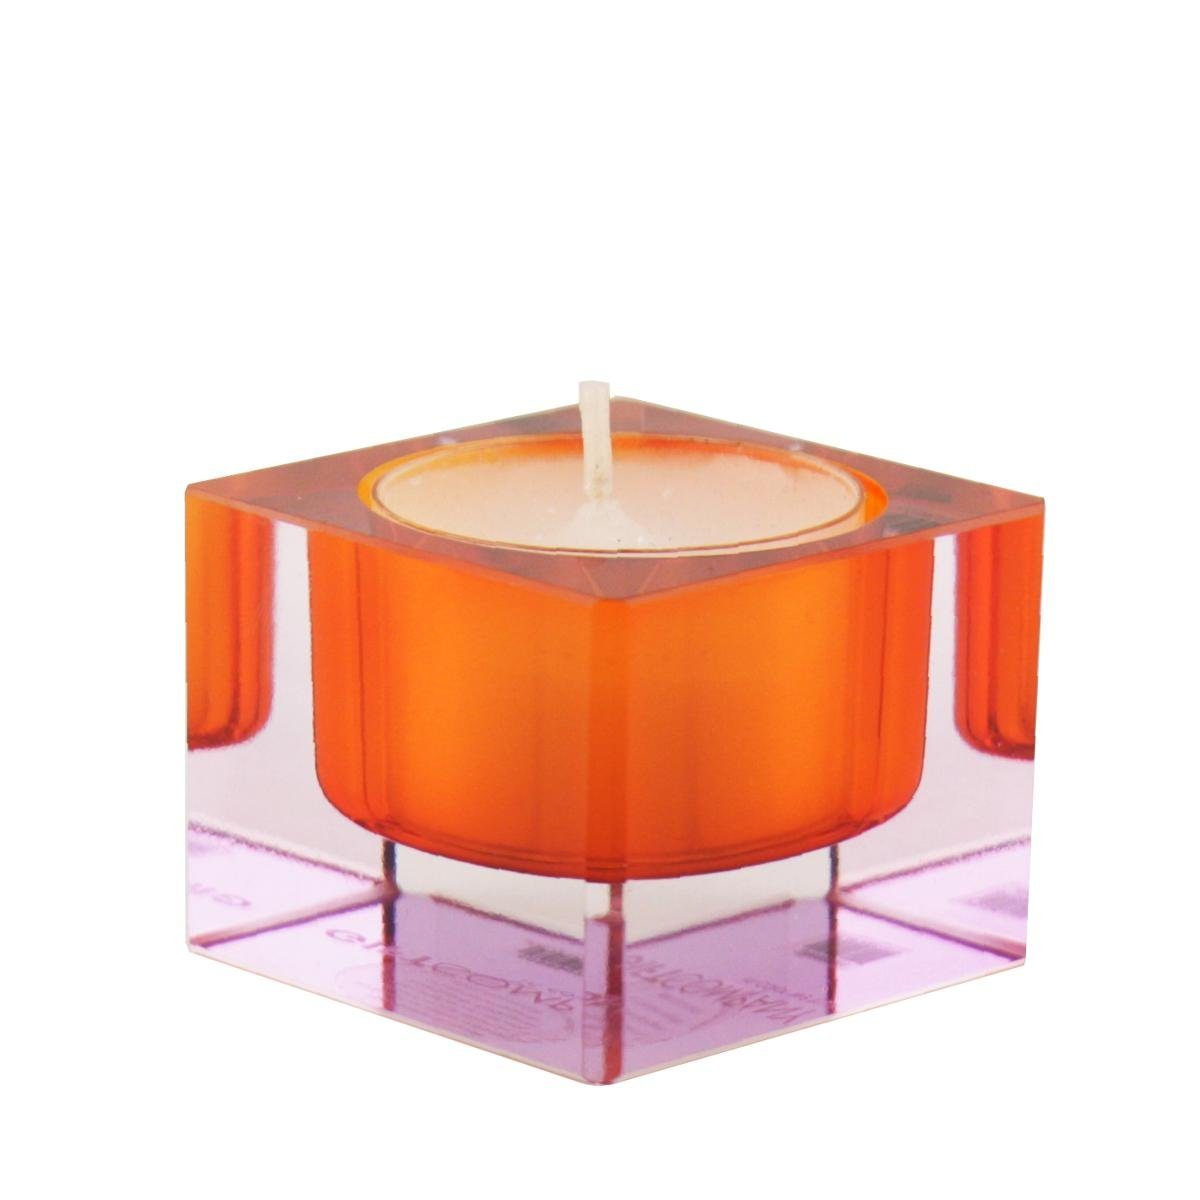 (Stück) Teelichthalter Teelichthalter Giftcompany Kristallglas Sari Gift-Company